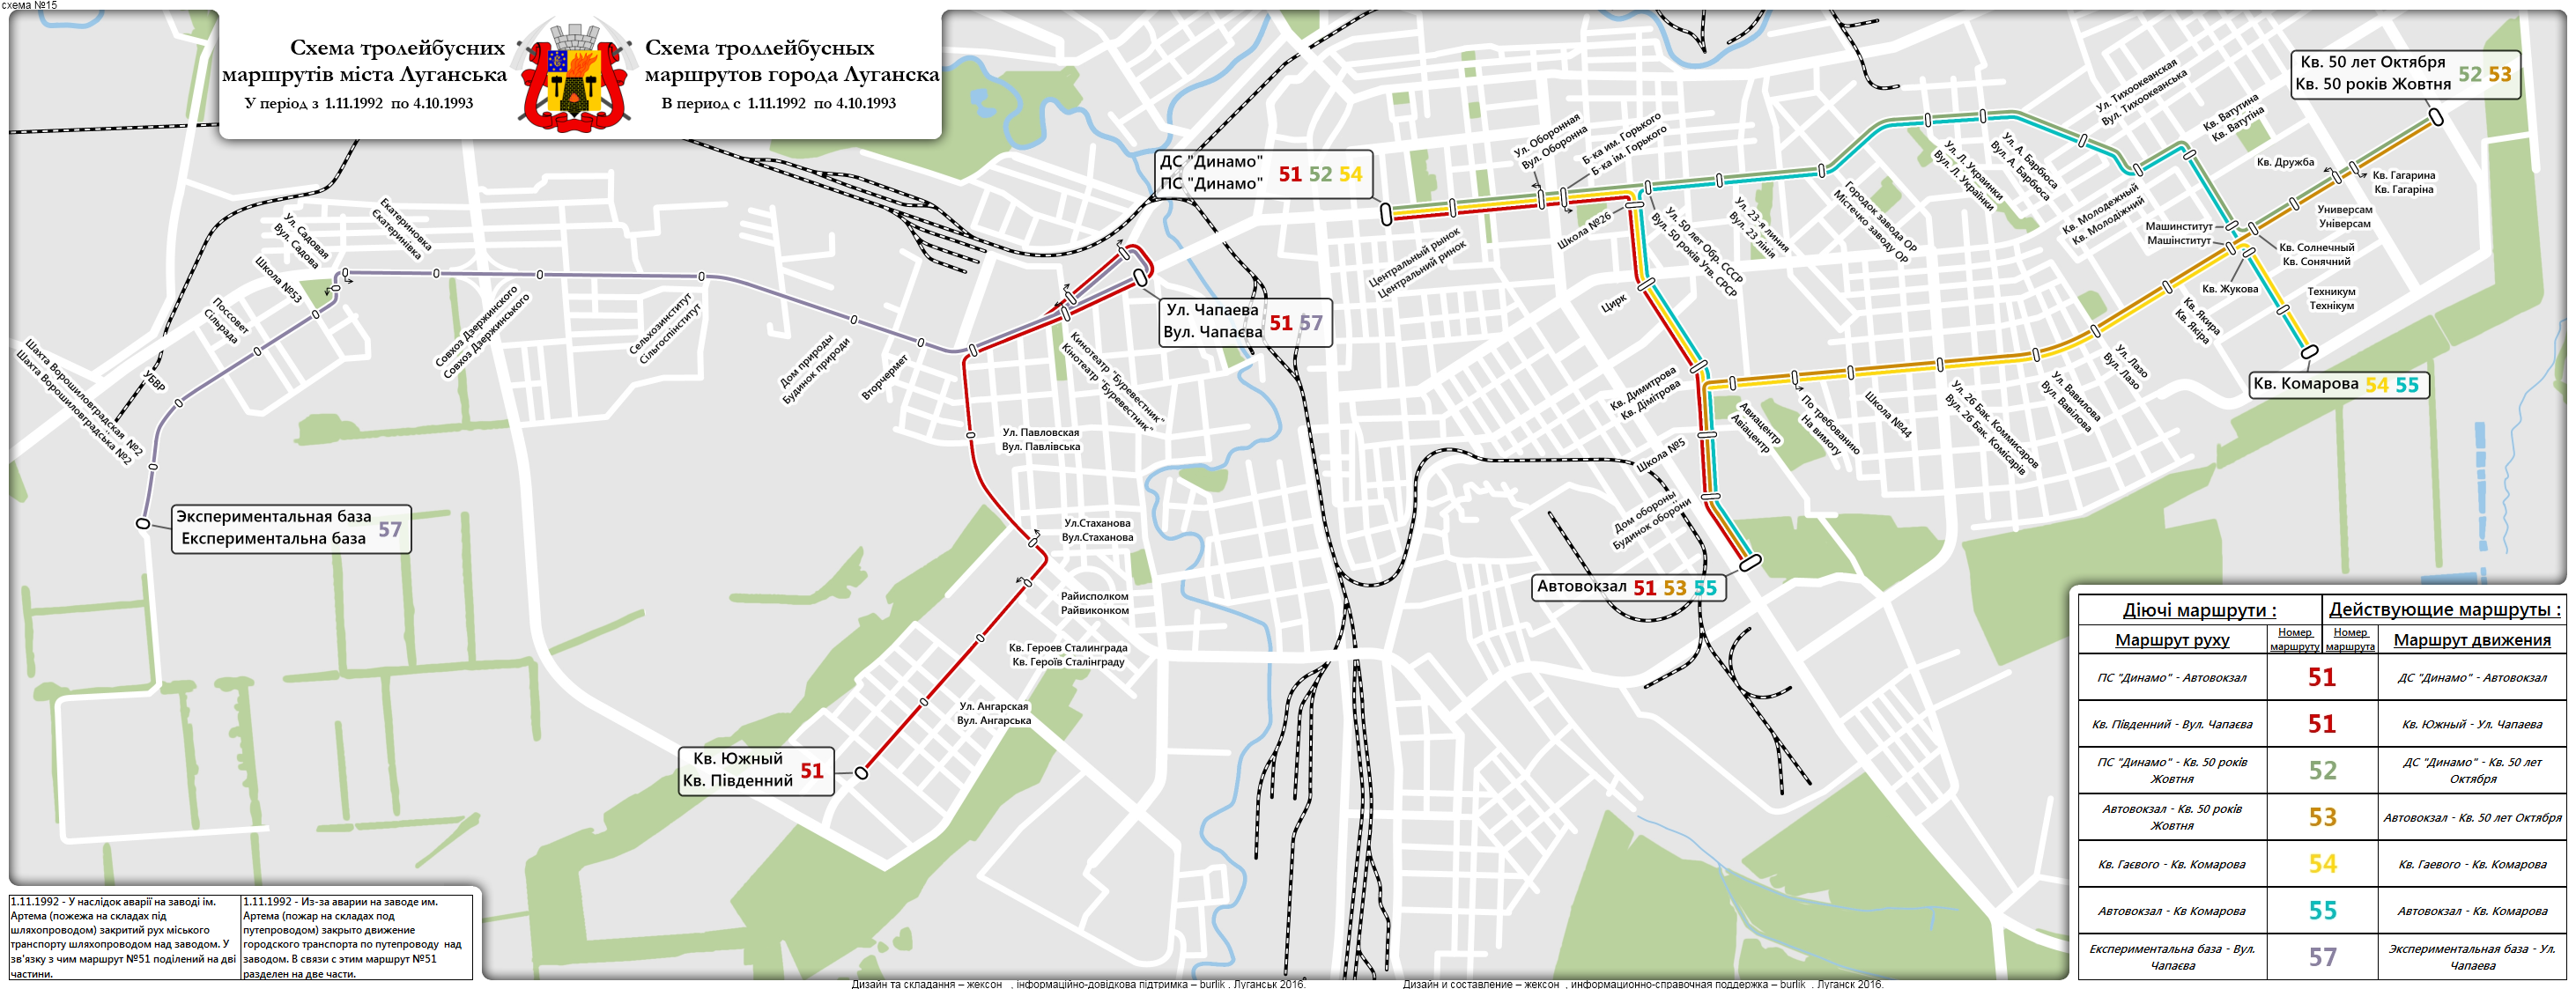 Луганск — Исторические схемы троллейбусных маршрутов